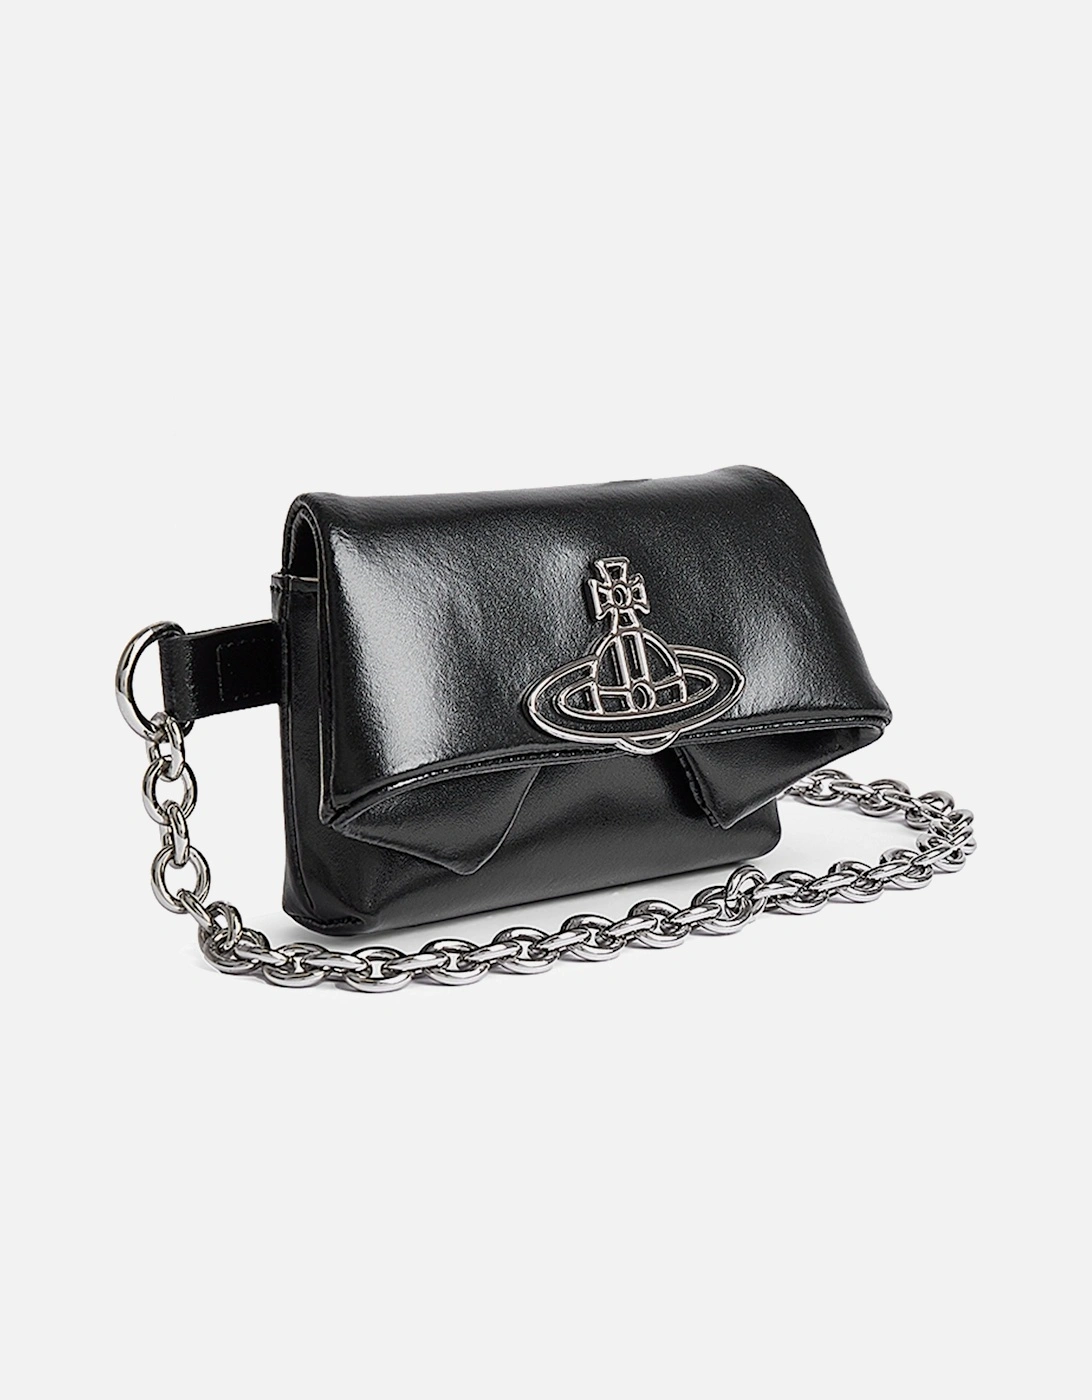 Mirage LH Mini Courtney Chain Black Belt Bag